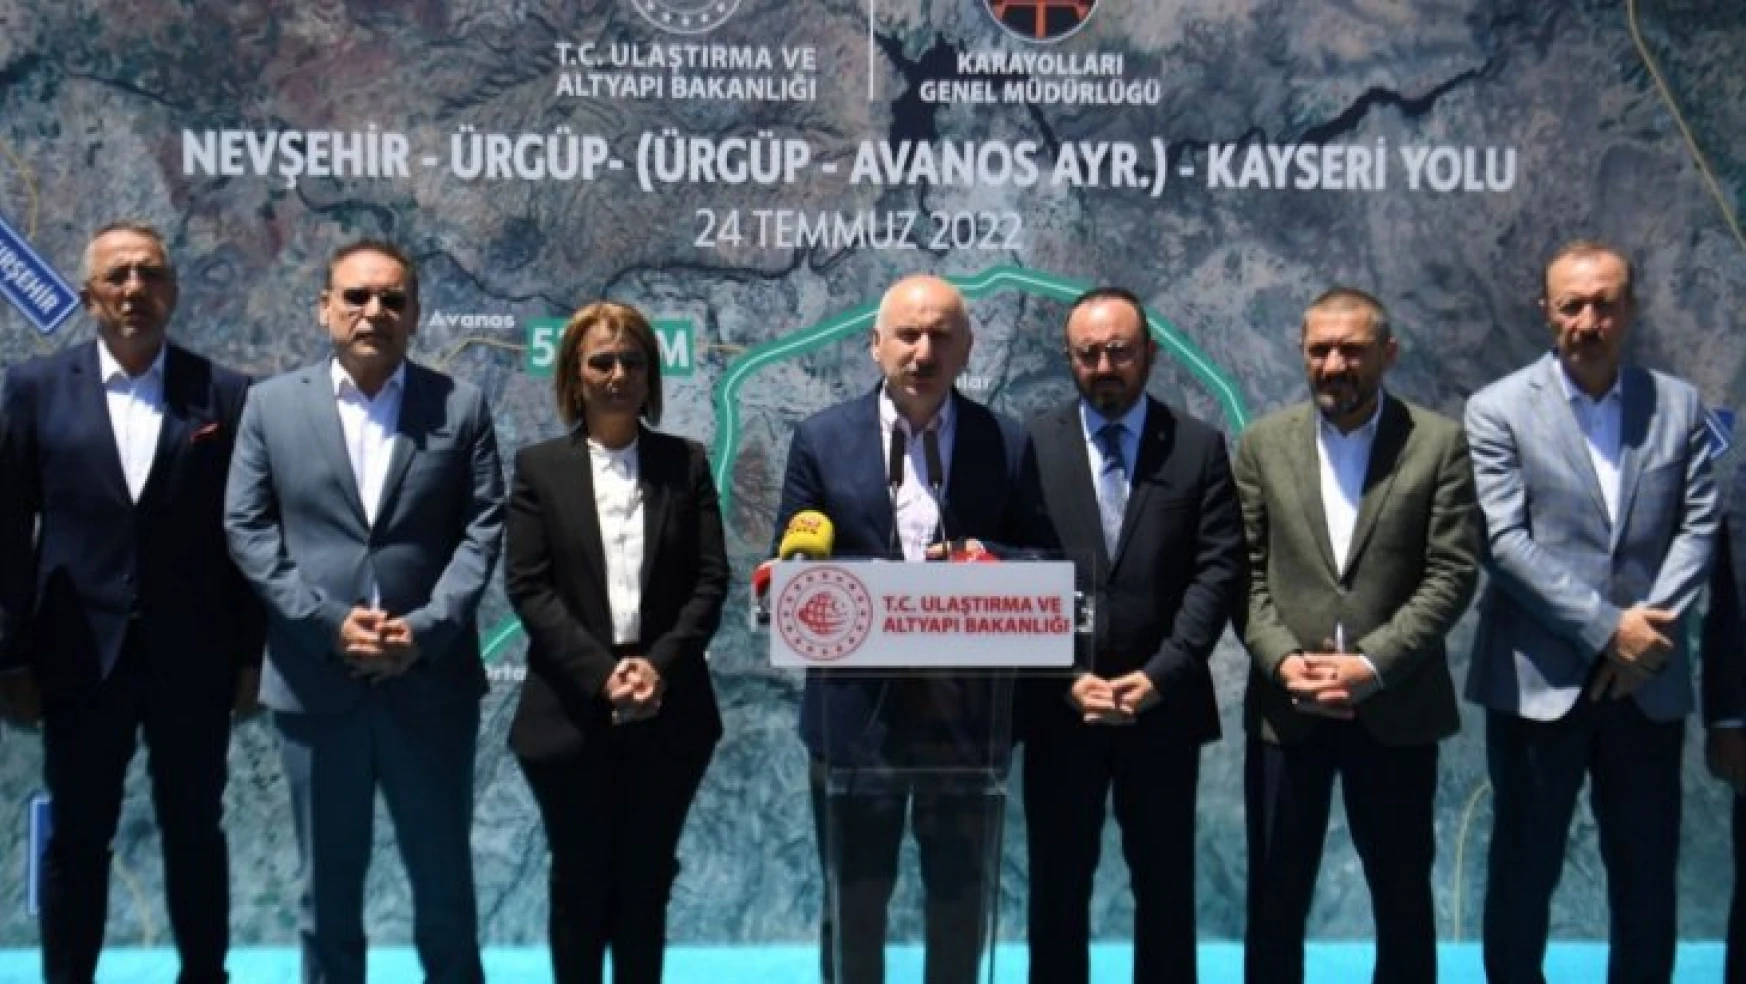 Nevşehir'in ulaşım ve iletişim yatırımları için son 20 yılda 3 milyar liraya yakın harcama yapıldı